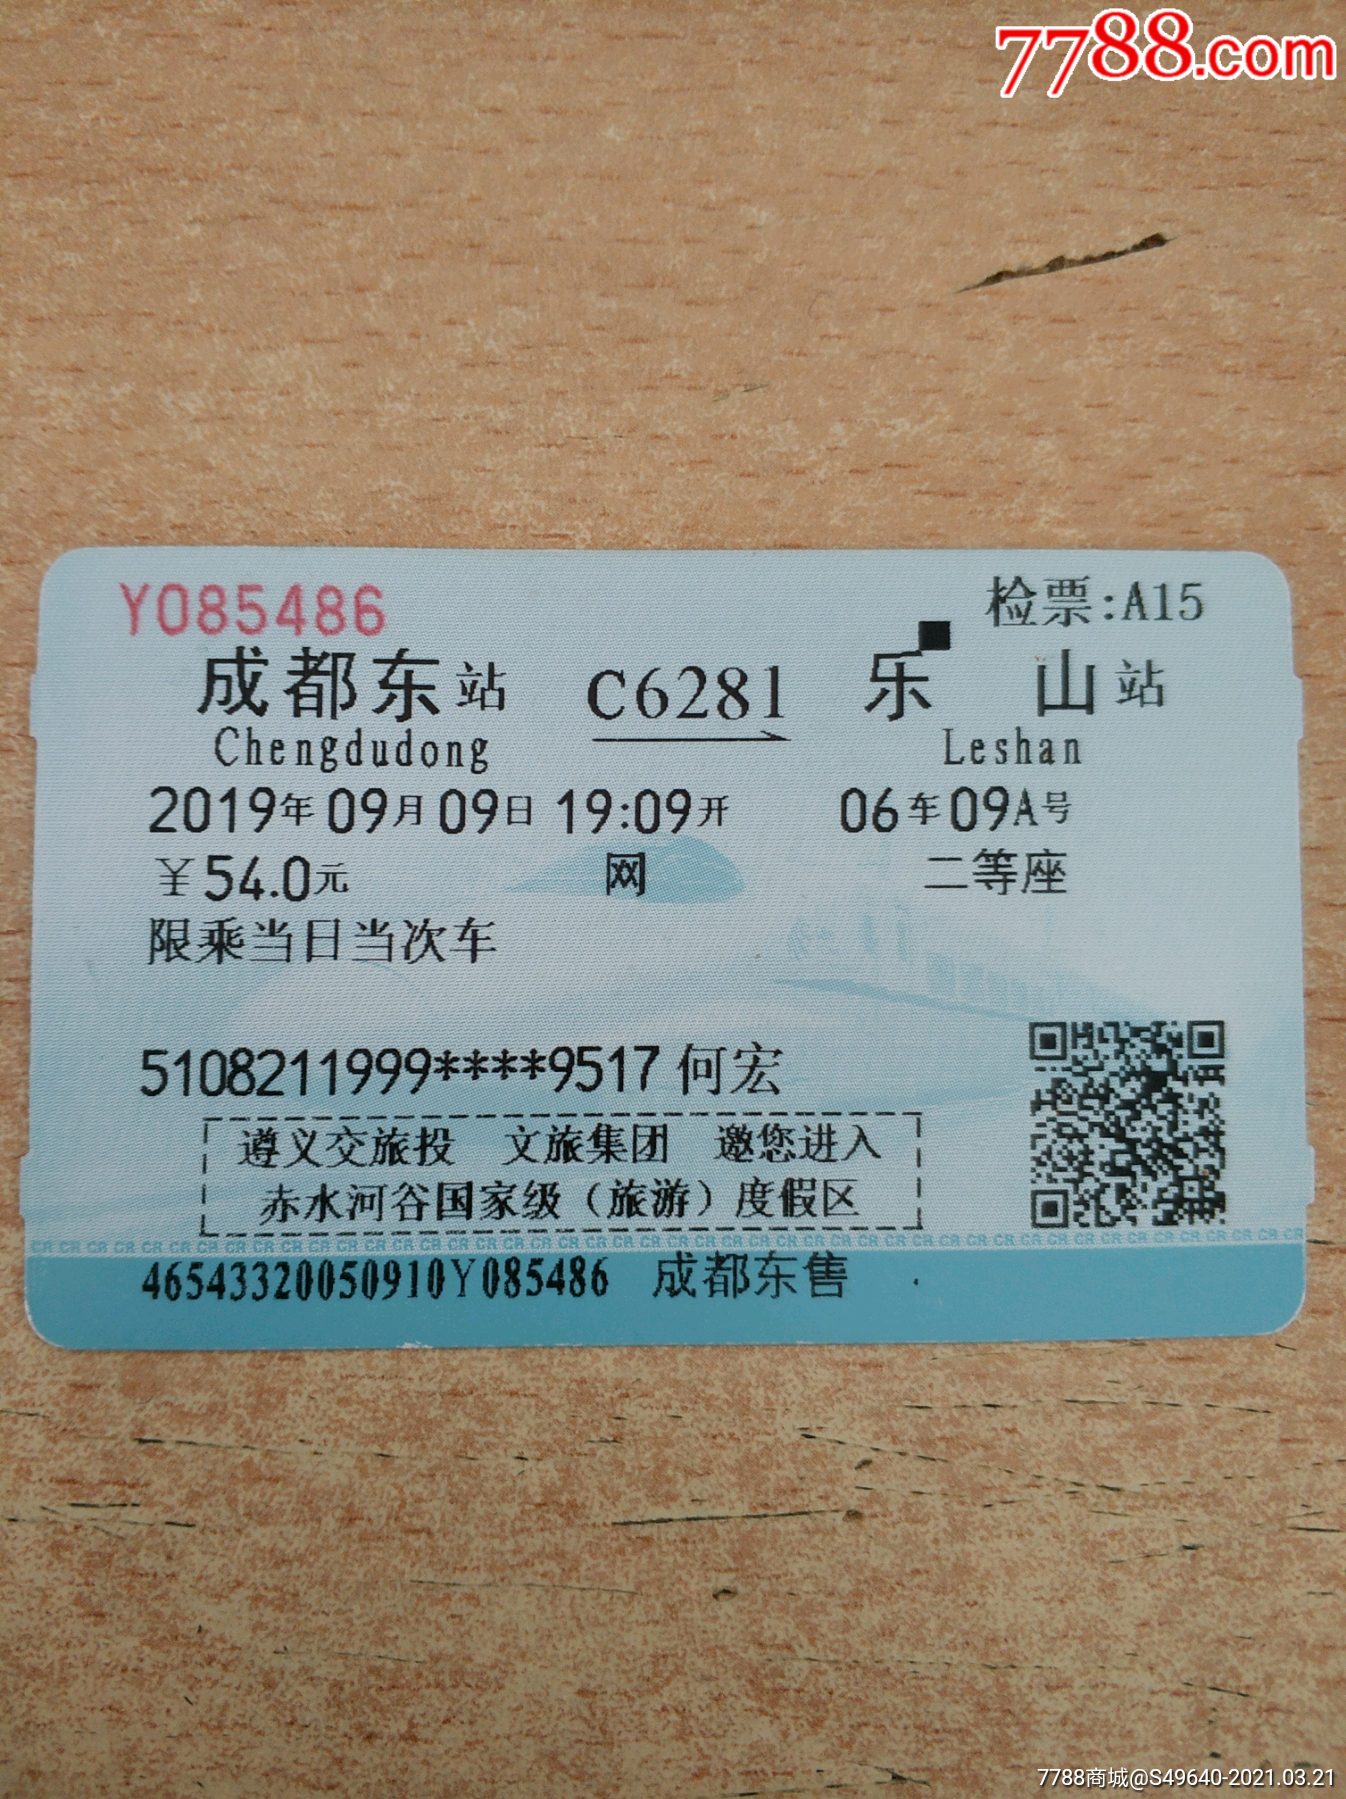 成都东c6281乐山(广告票)